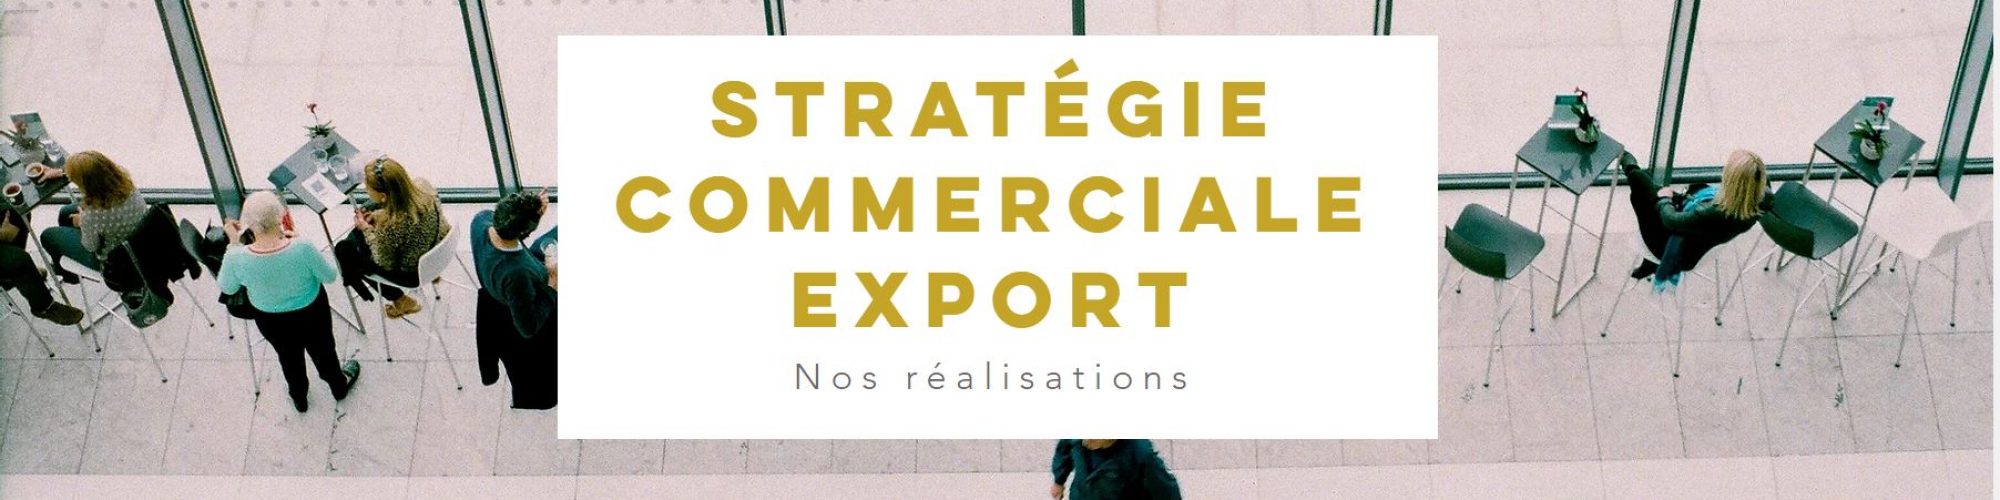 realisations stratégie commerciale export cecileboury